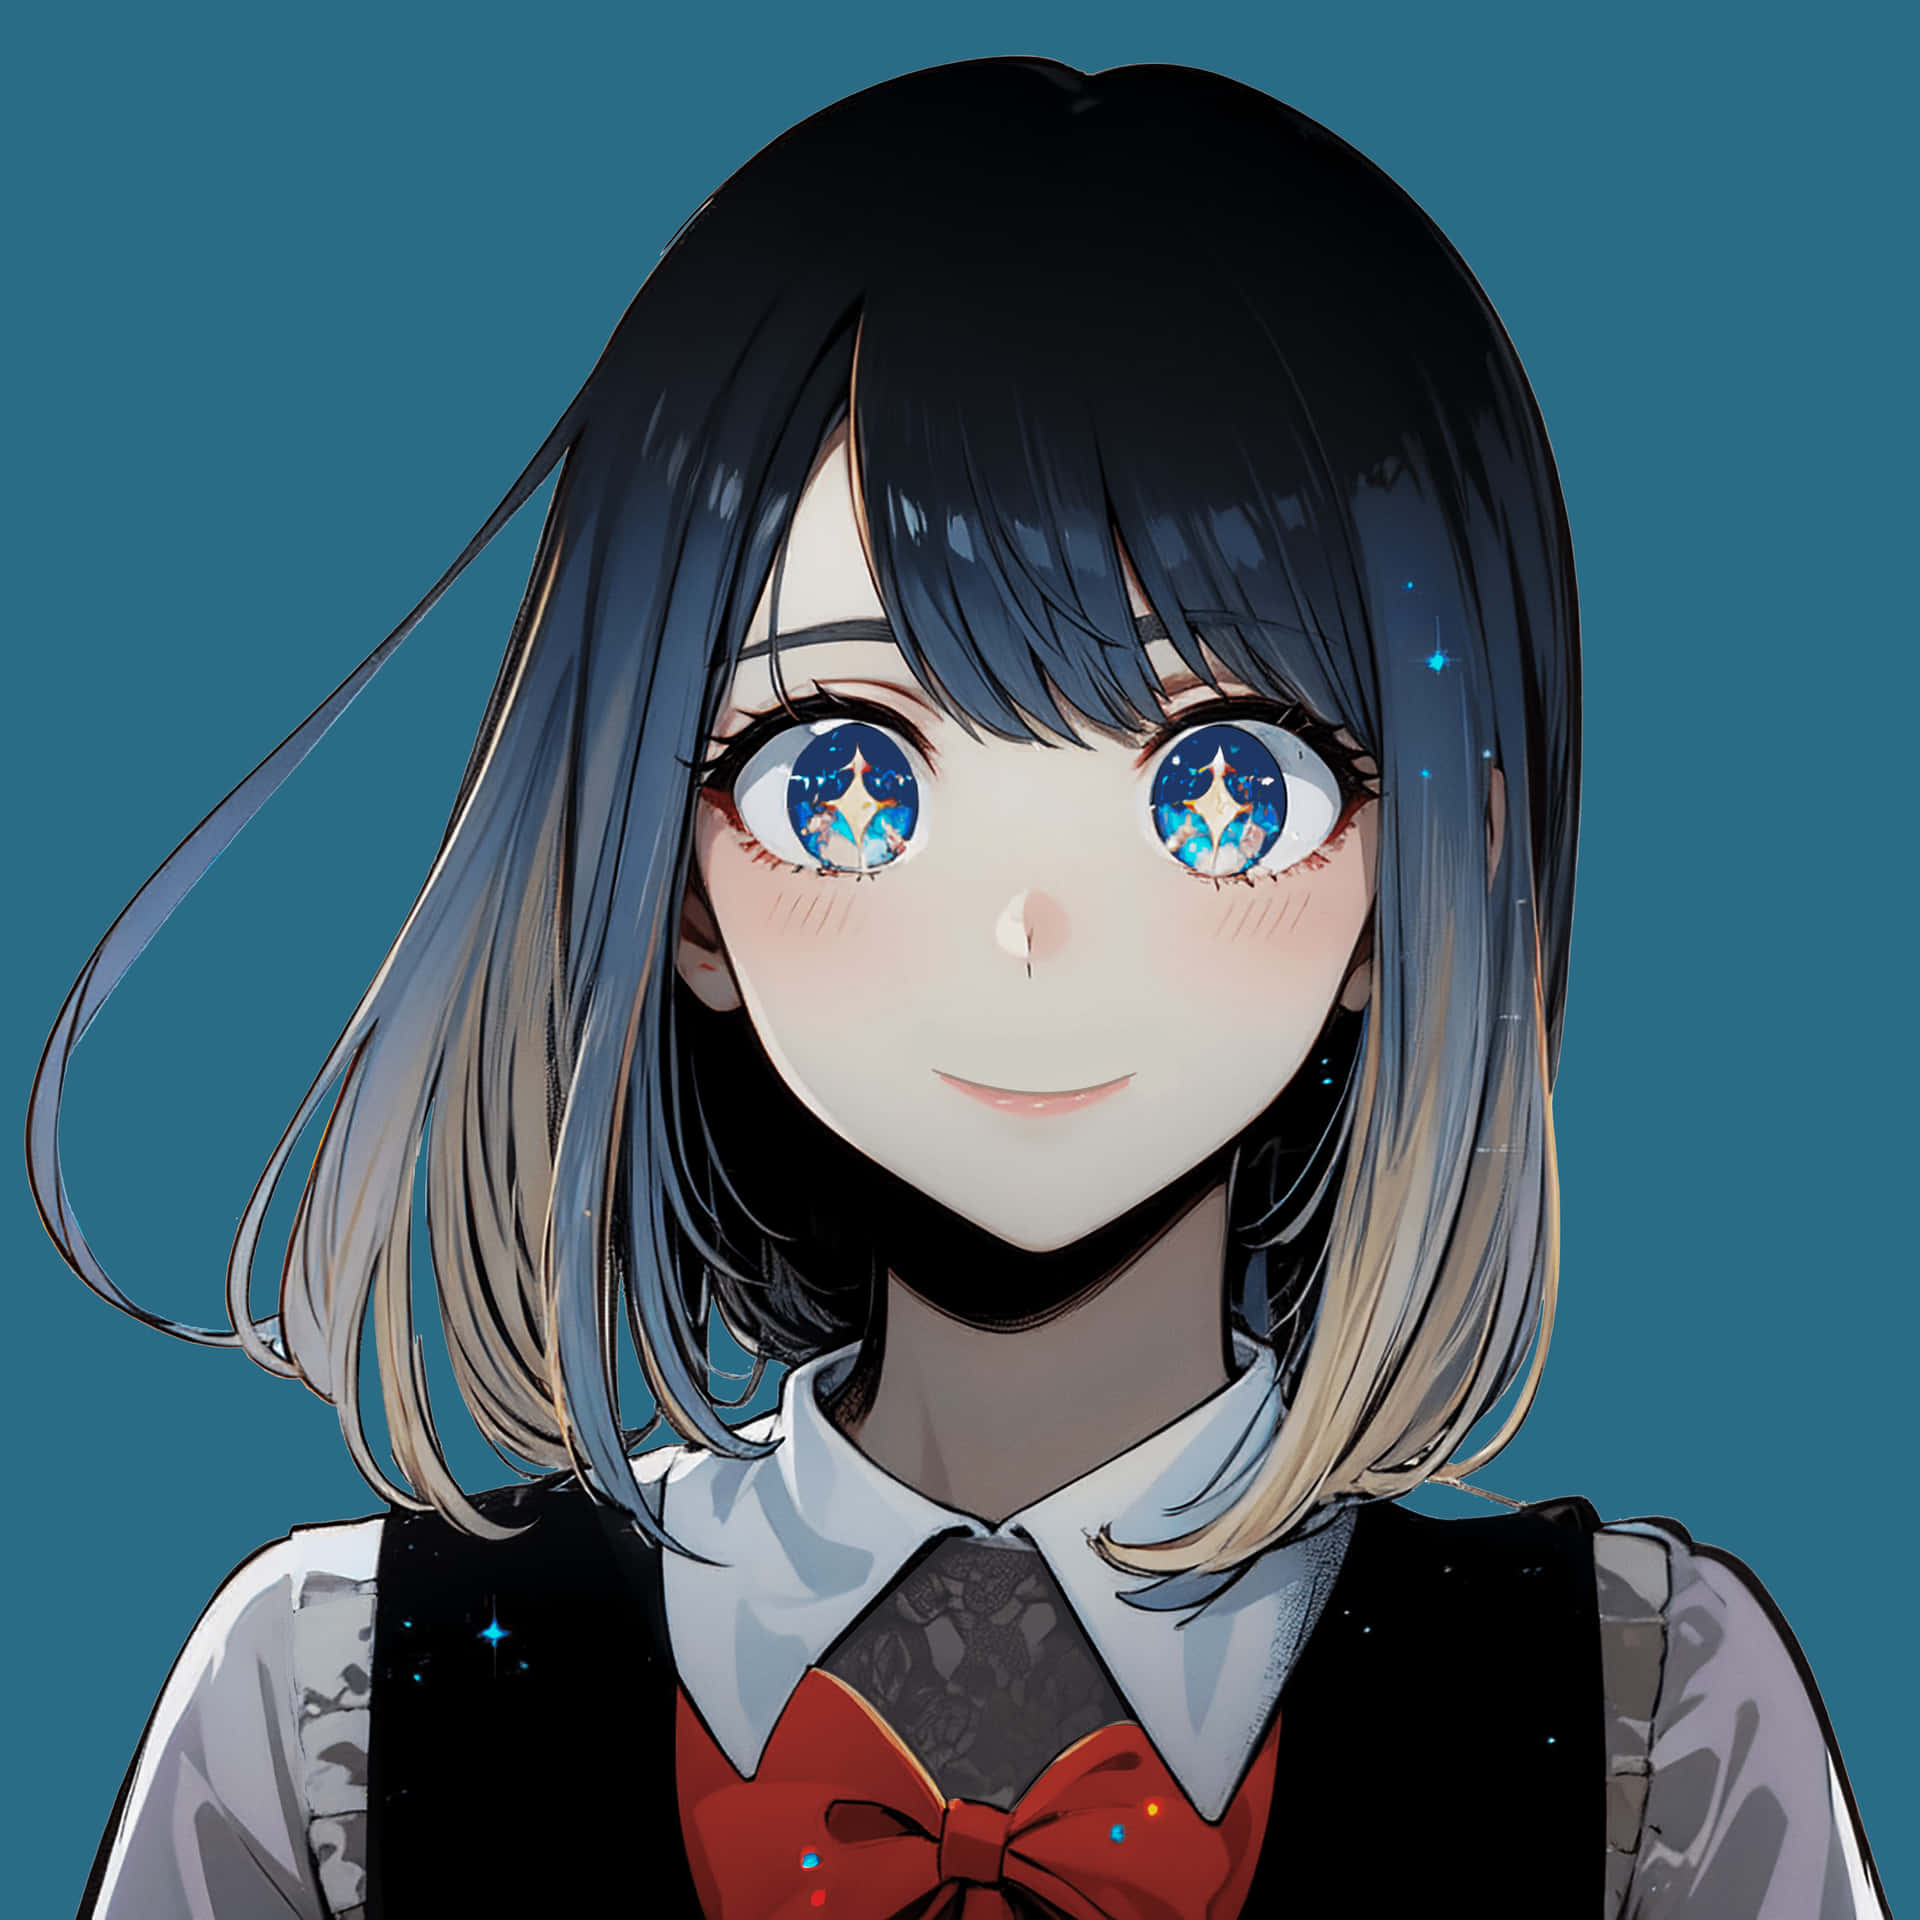 Starry Eyed Anime Girl Wallpaper